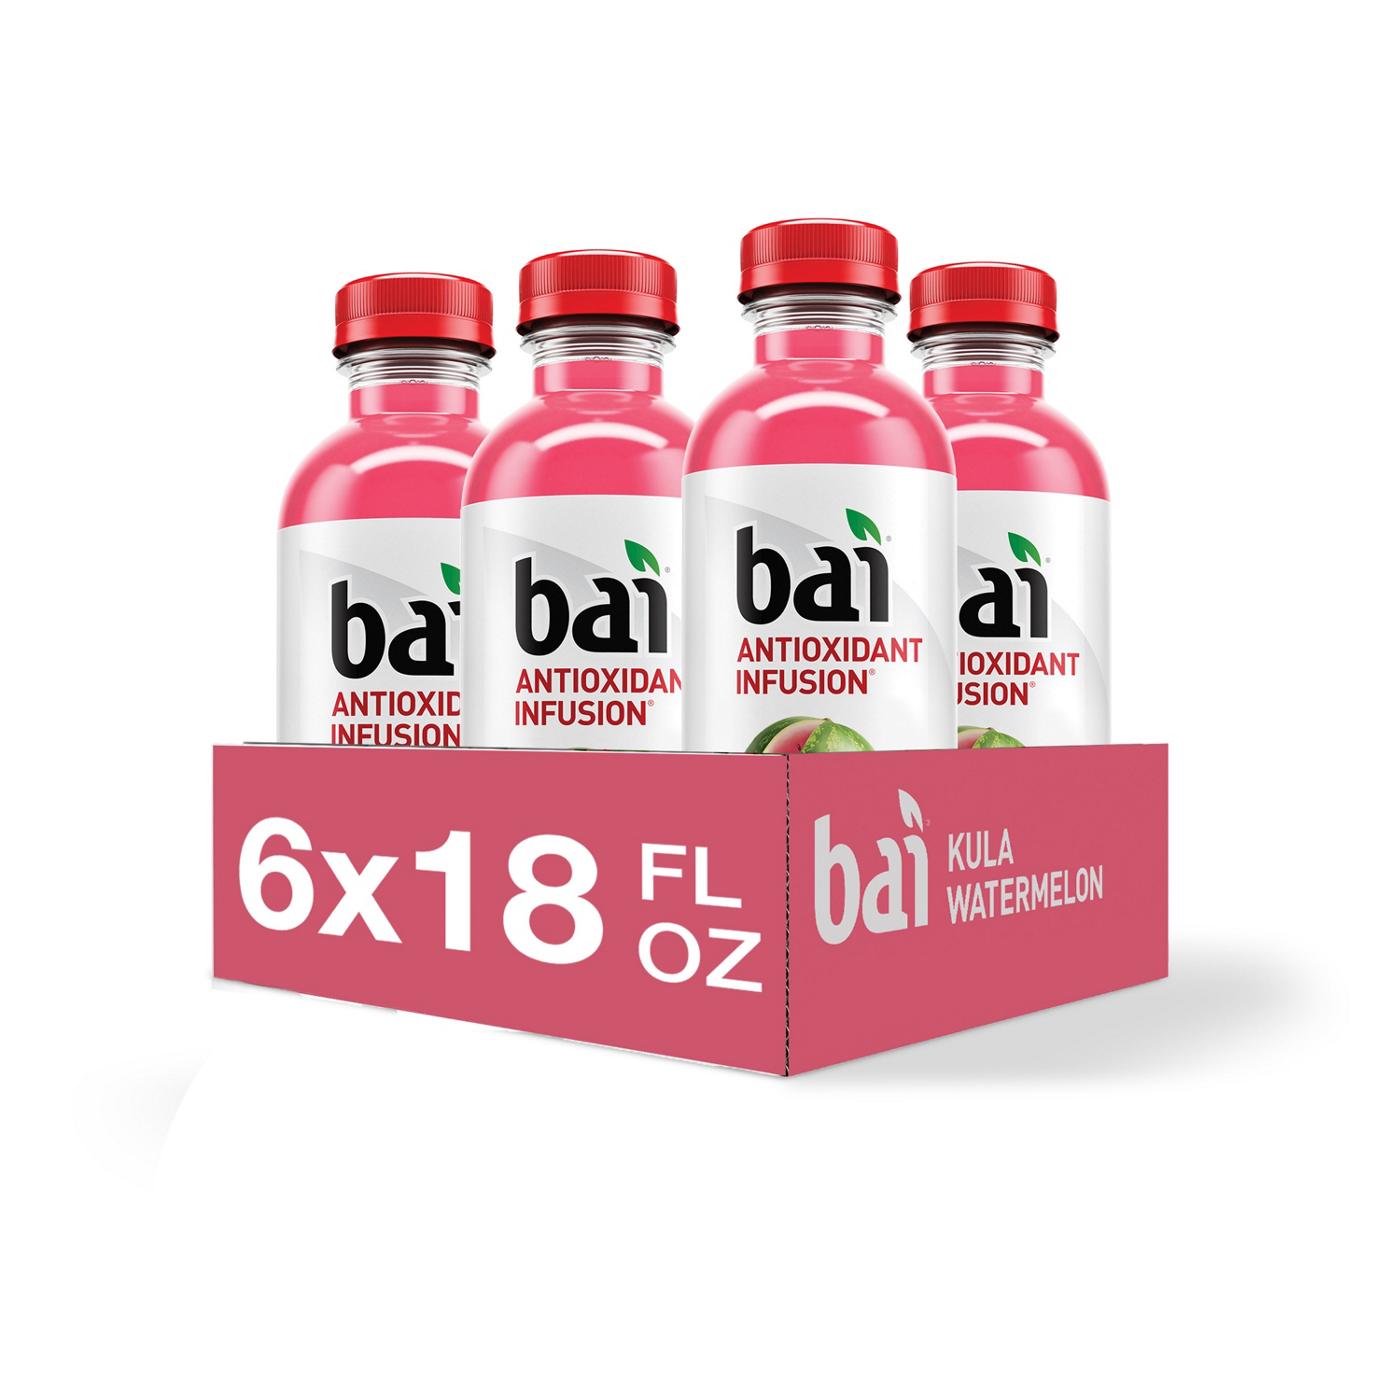 Bai Kula Watermelon Beverage 18 oz Bottles; image 4 of 4